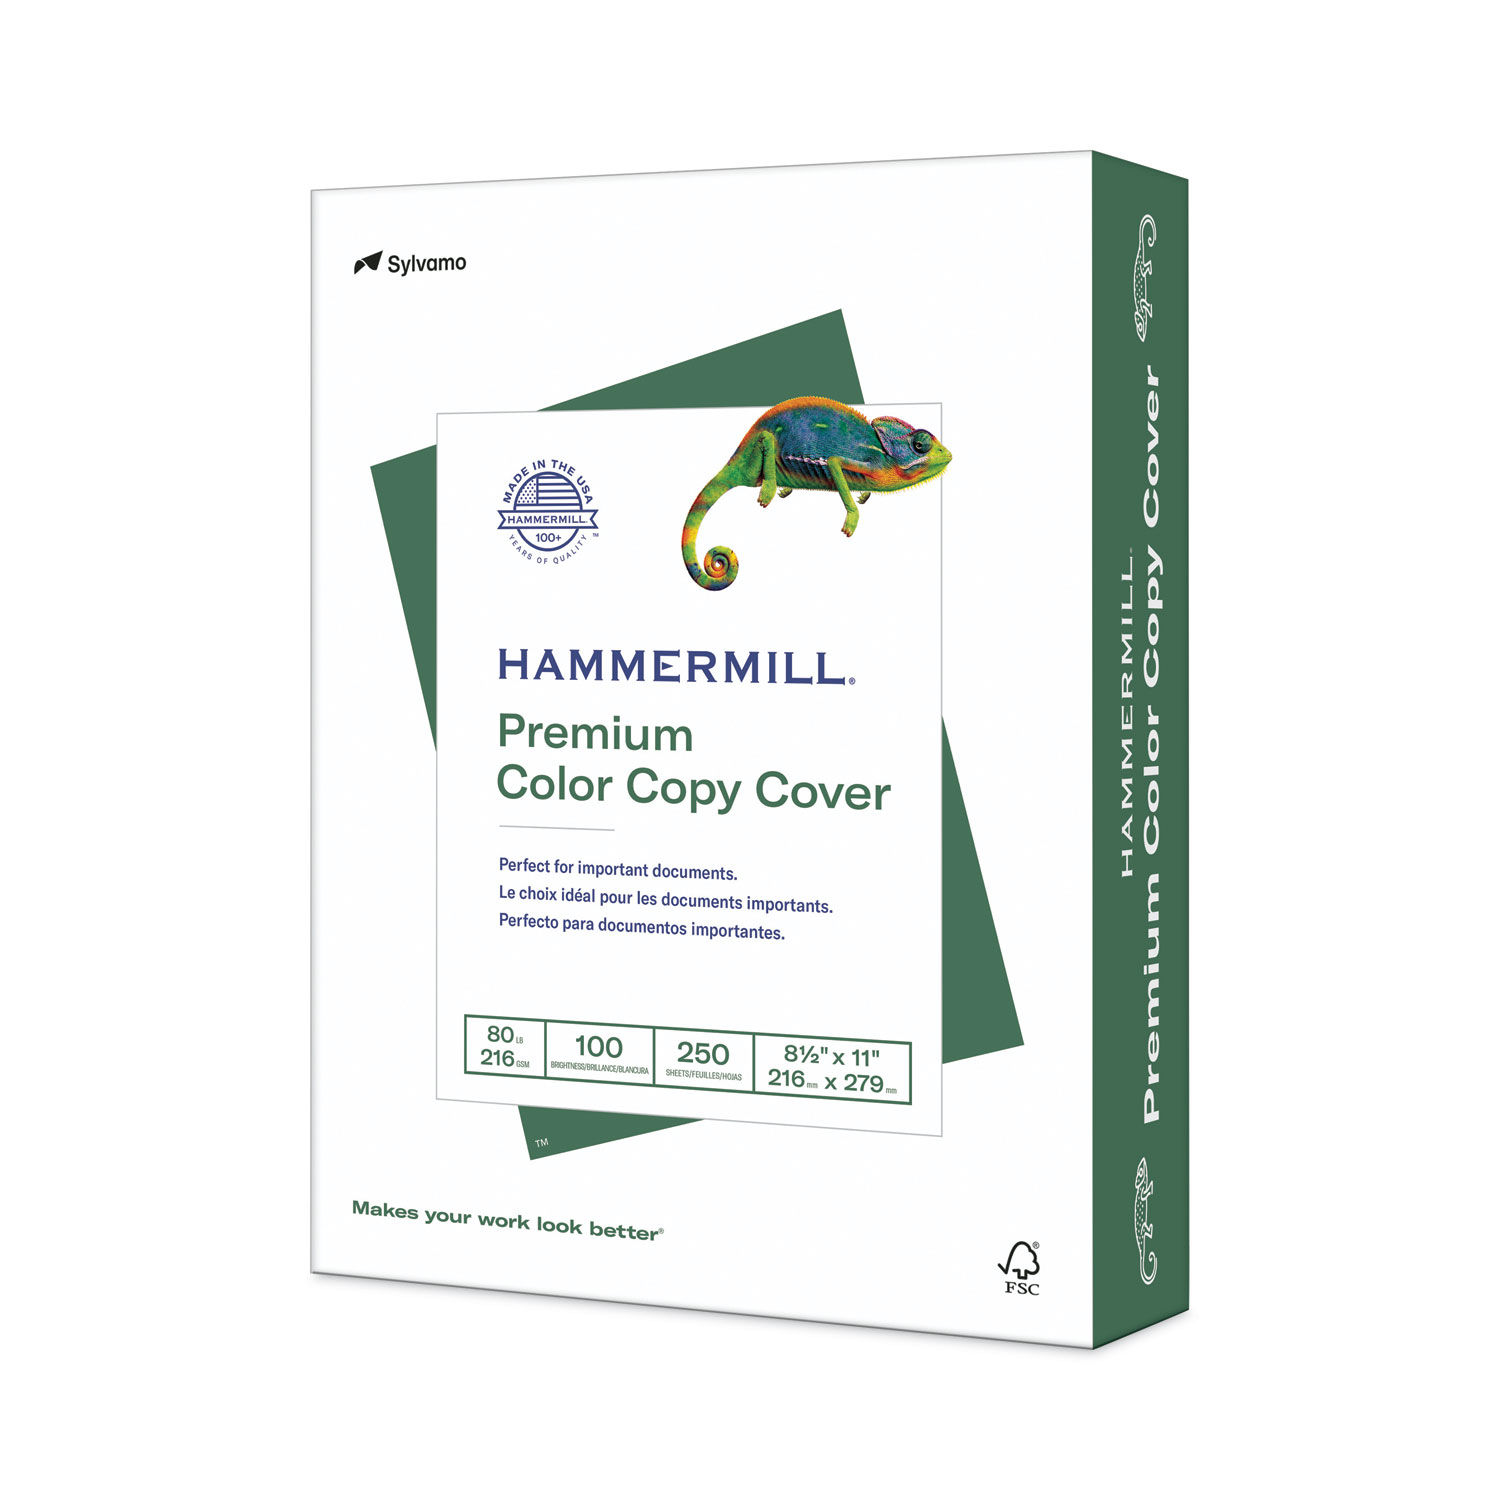 Premium Color Copy Cover by Hammermillandreg; HAM120023